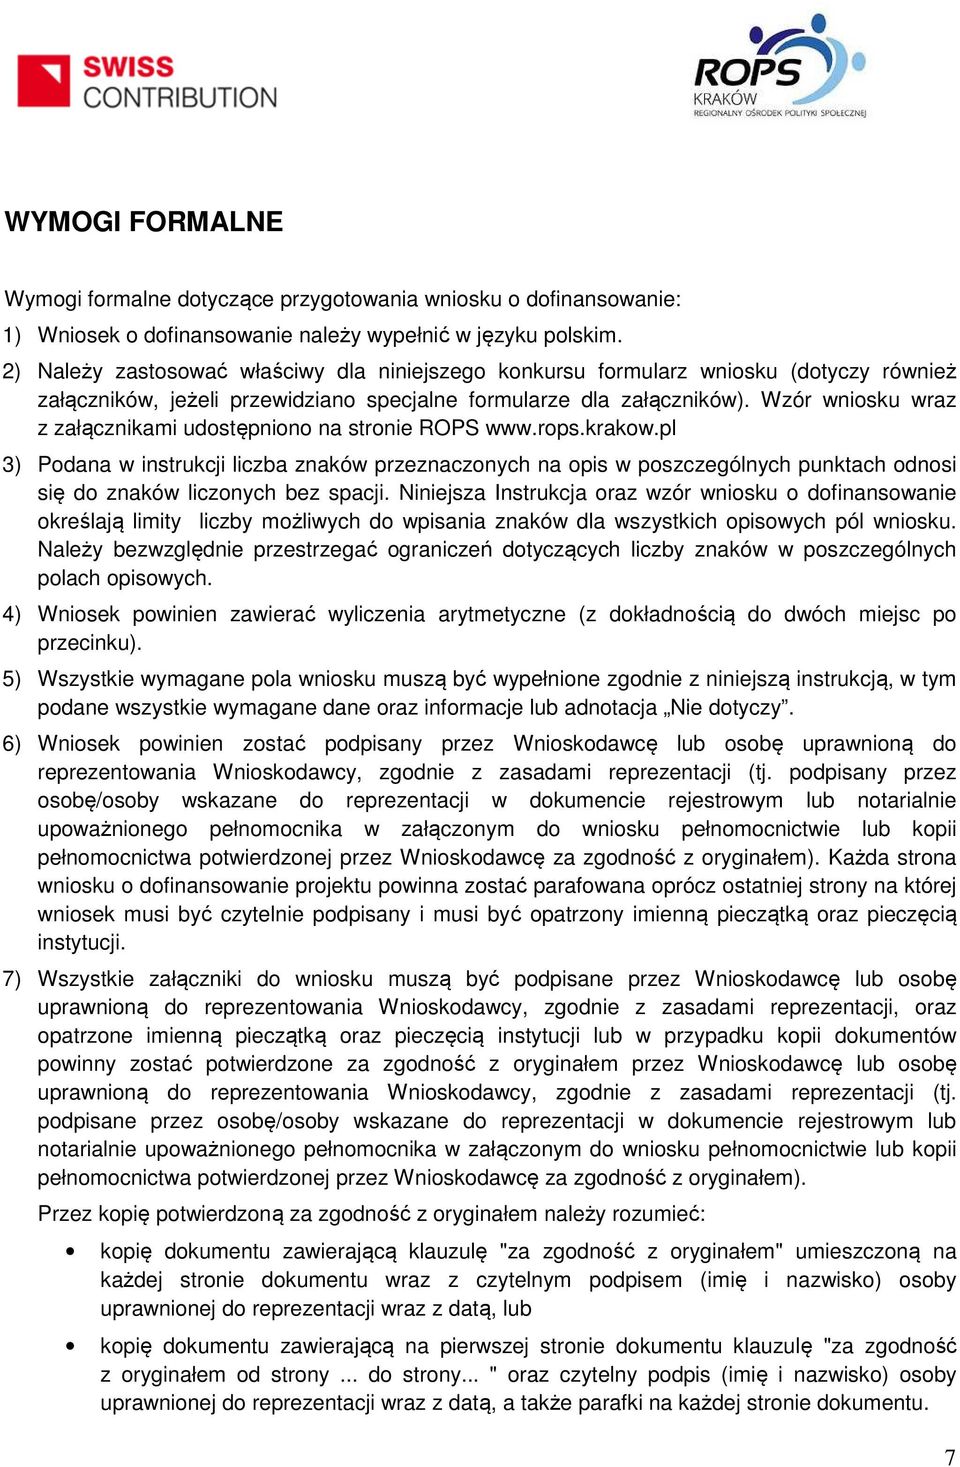 Wzór wniosku wraz z załącznikami udostępniono na stronie ROPS www.rops.krakow.